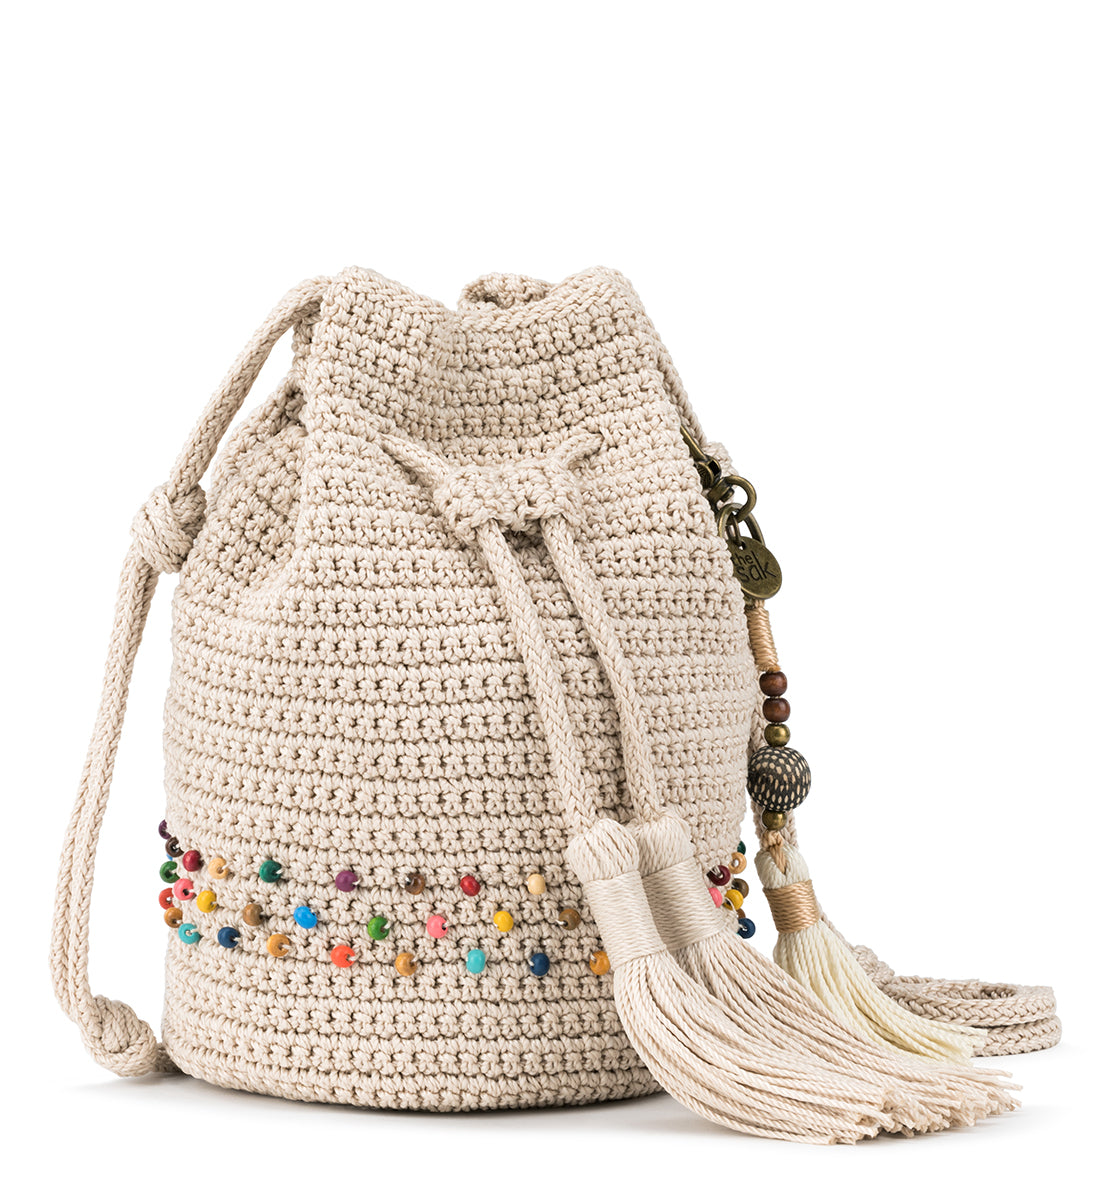 Sayulita Crochet Drawstring Bucket – The Sak